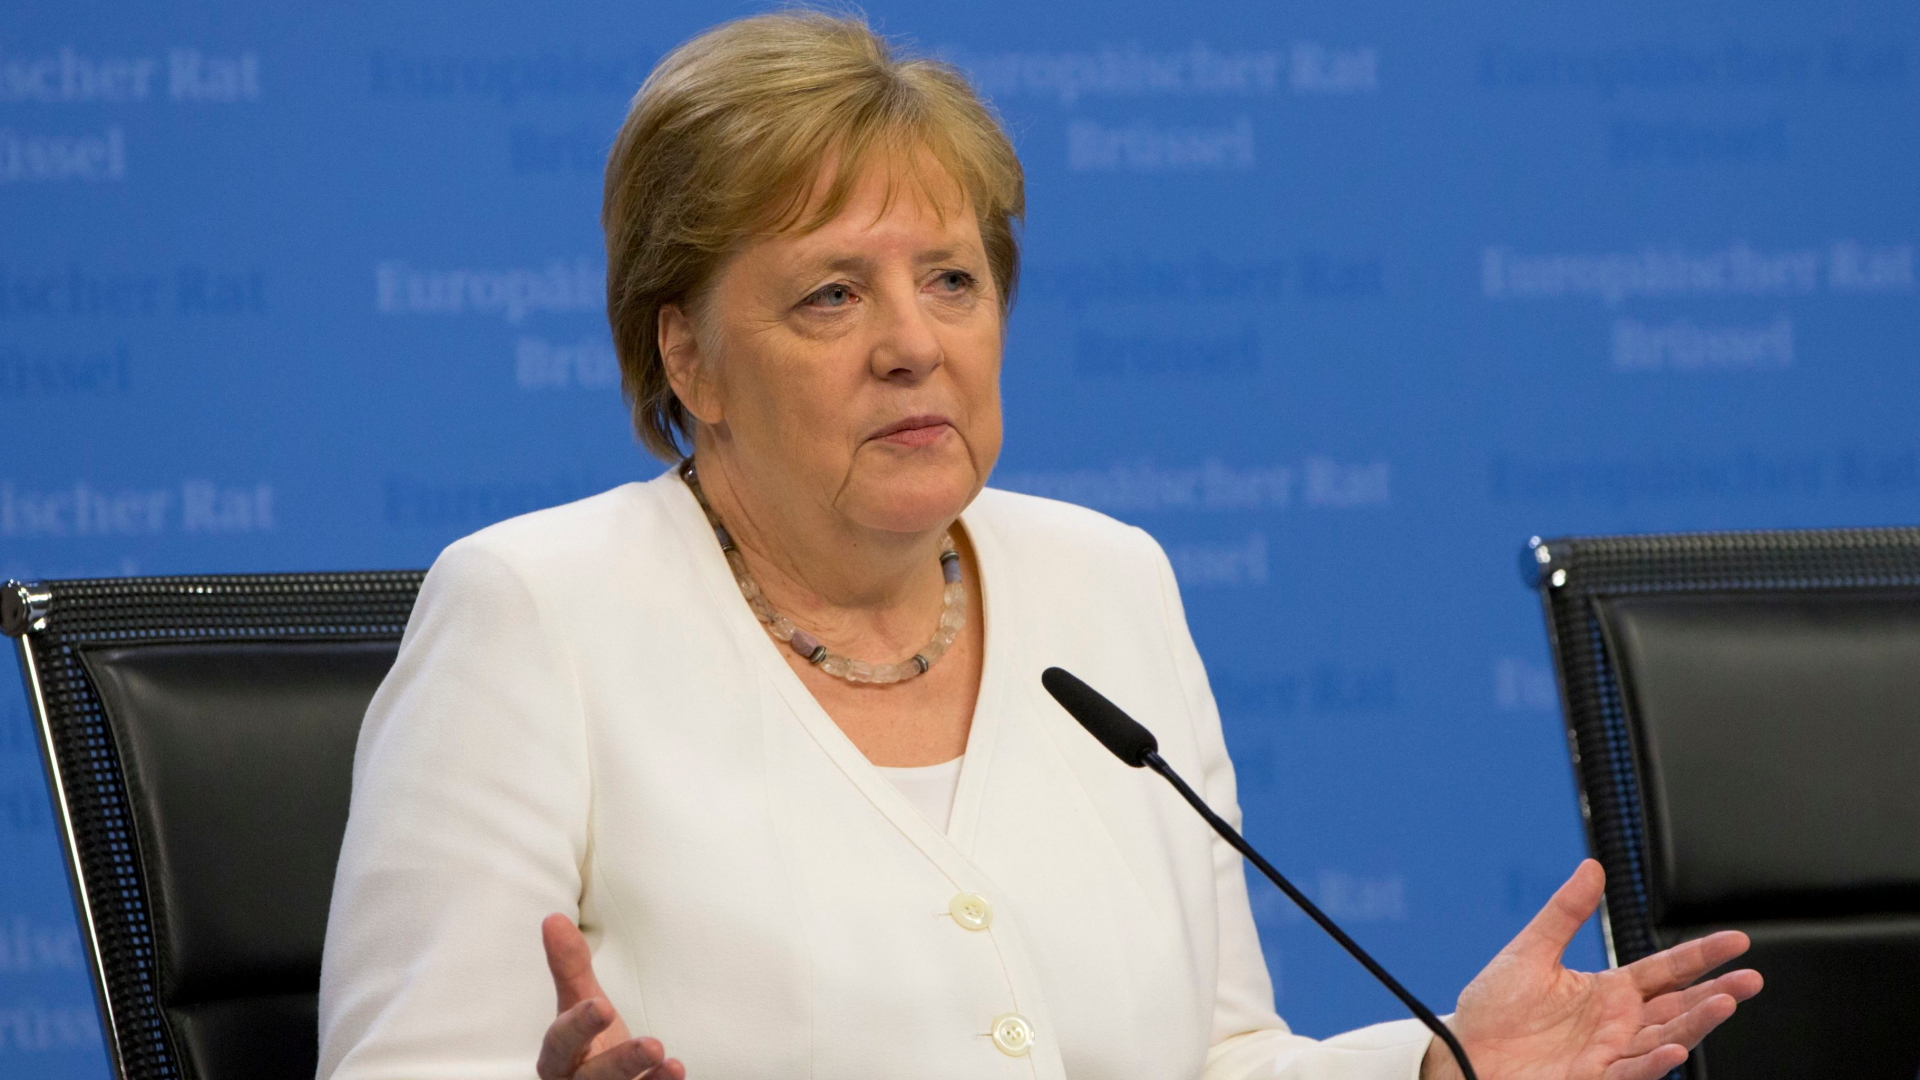 Bundeskanzlerin Angela Merkel auf einer Pressekonferenz zum EU-Gipfel in Brüssel | OLIVIER HOSLET/EPA-EFE/REX